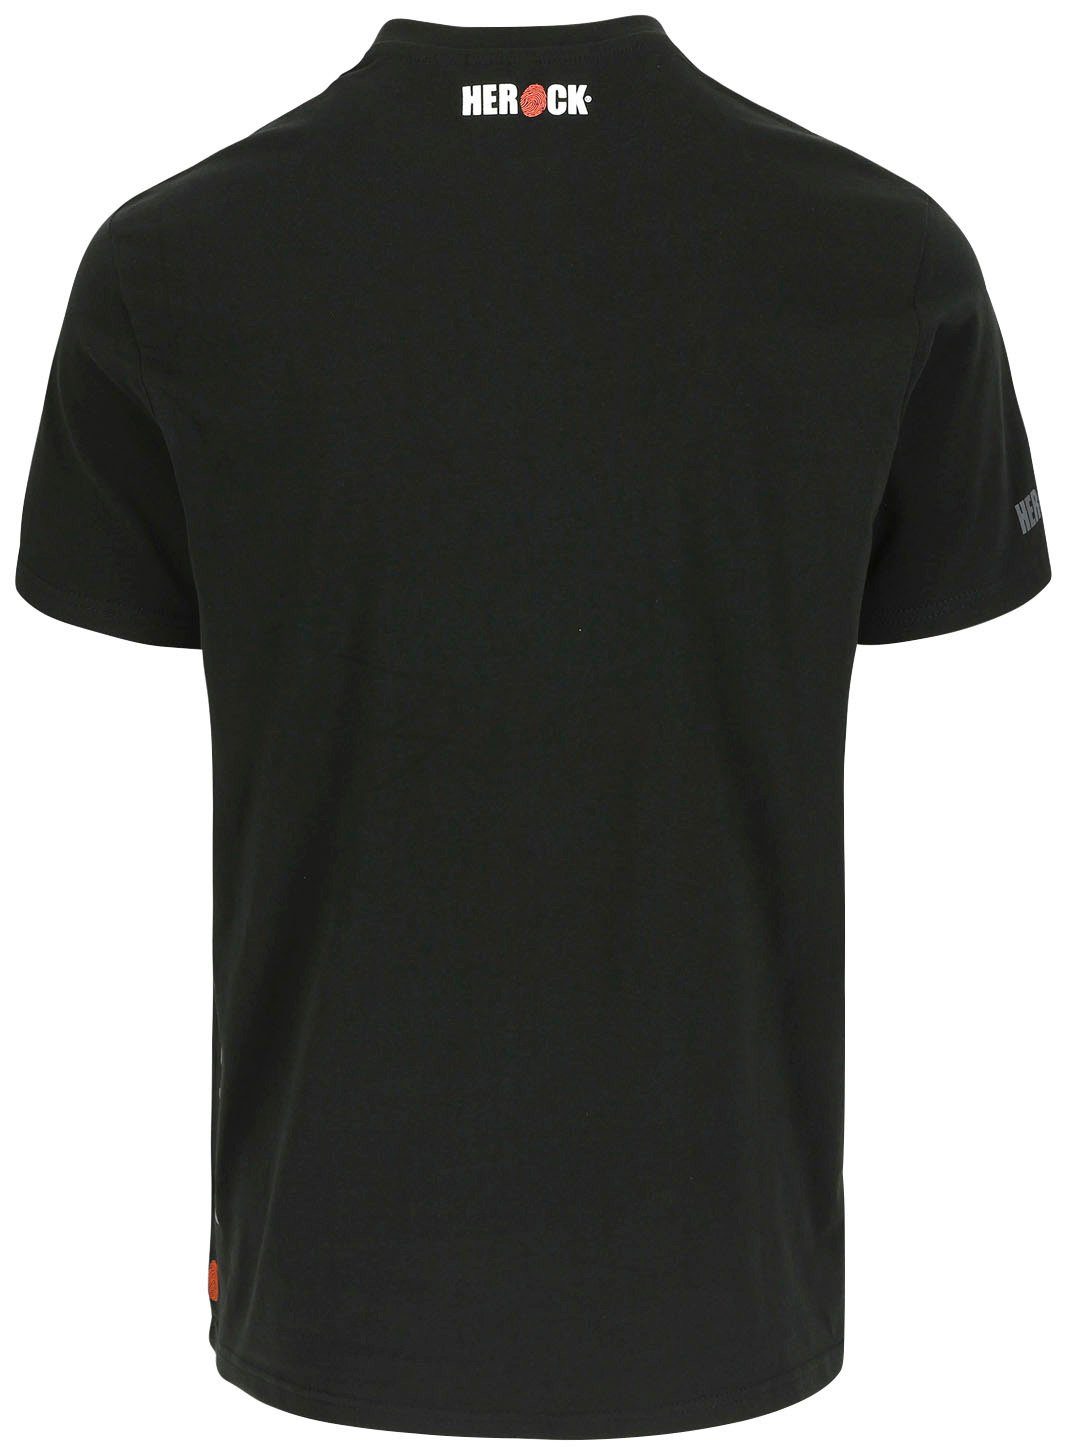 Herock T-Shirt Rundhalsausschnitt, T-Shirt kurze Rippstrickkragen kurze schwarz Callius Ärmel, Ärmel Herock®-Aufdruck